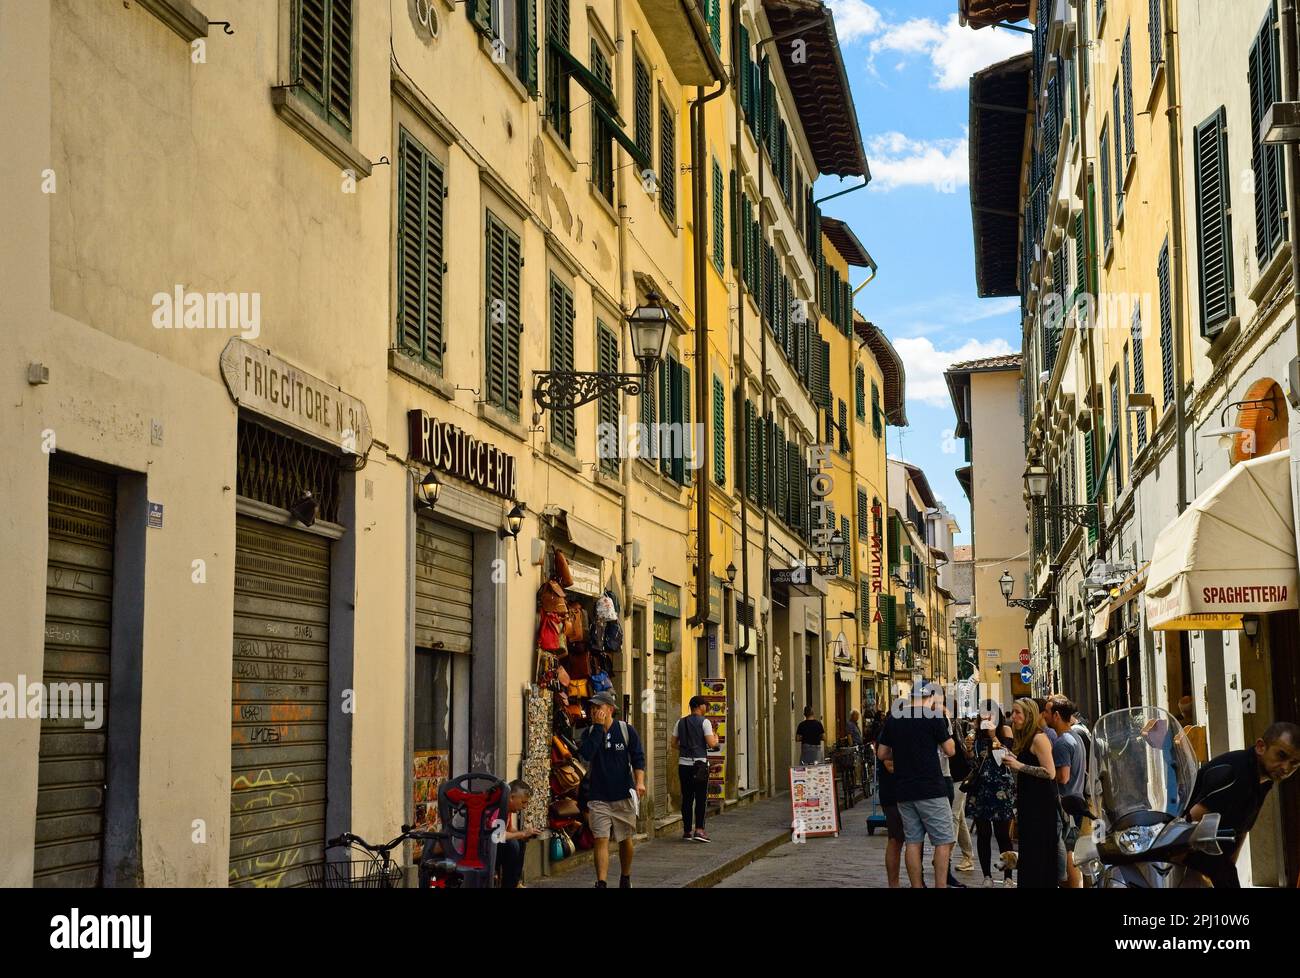 Geschäfte und Restaurants in der Via Sant' Antonino in Florenz, Italien, nur wenige Schritte vom berühmten zentralen Markt entfernt, bieten eine typische lebhafte Straßenszene. Stockfoto